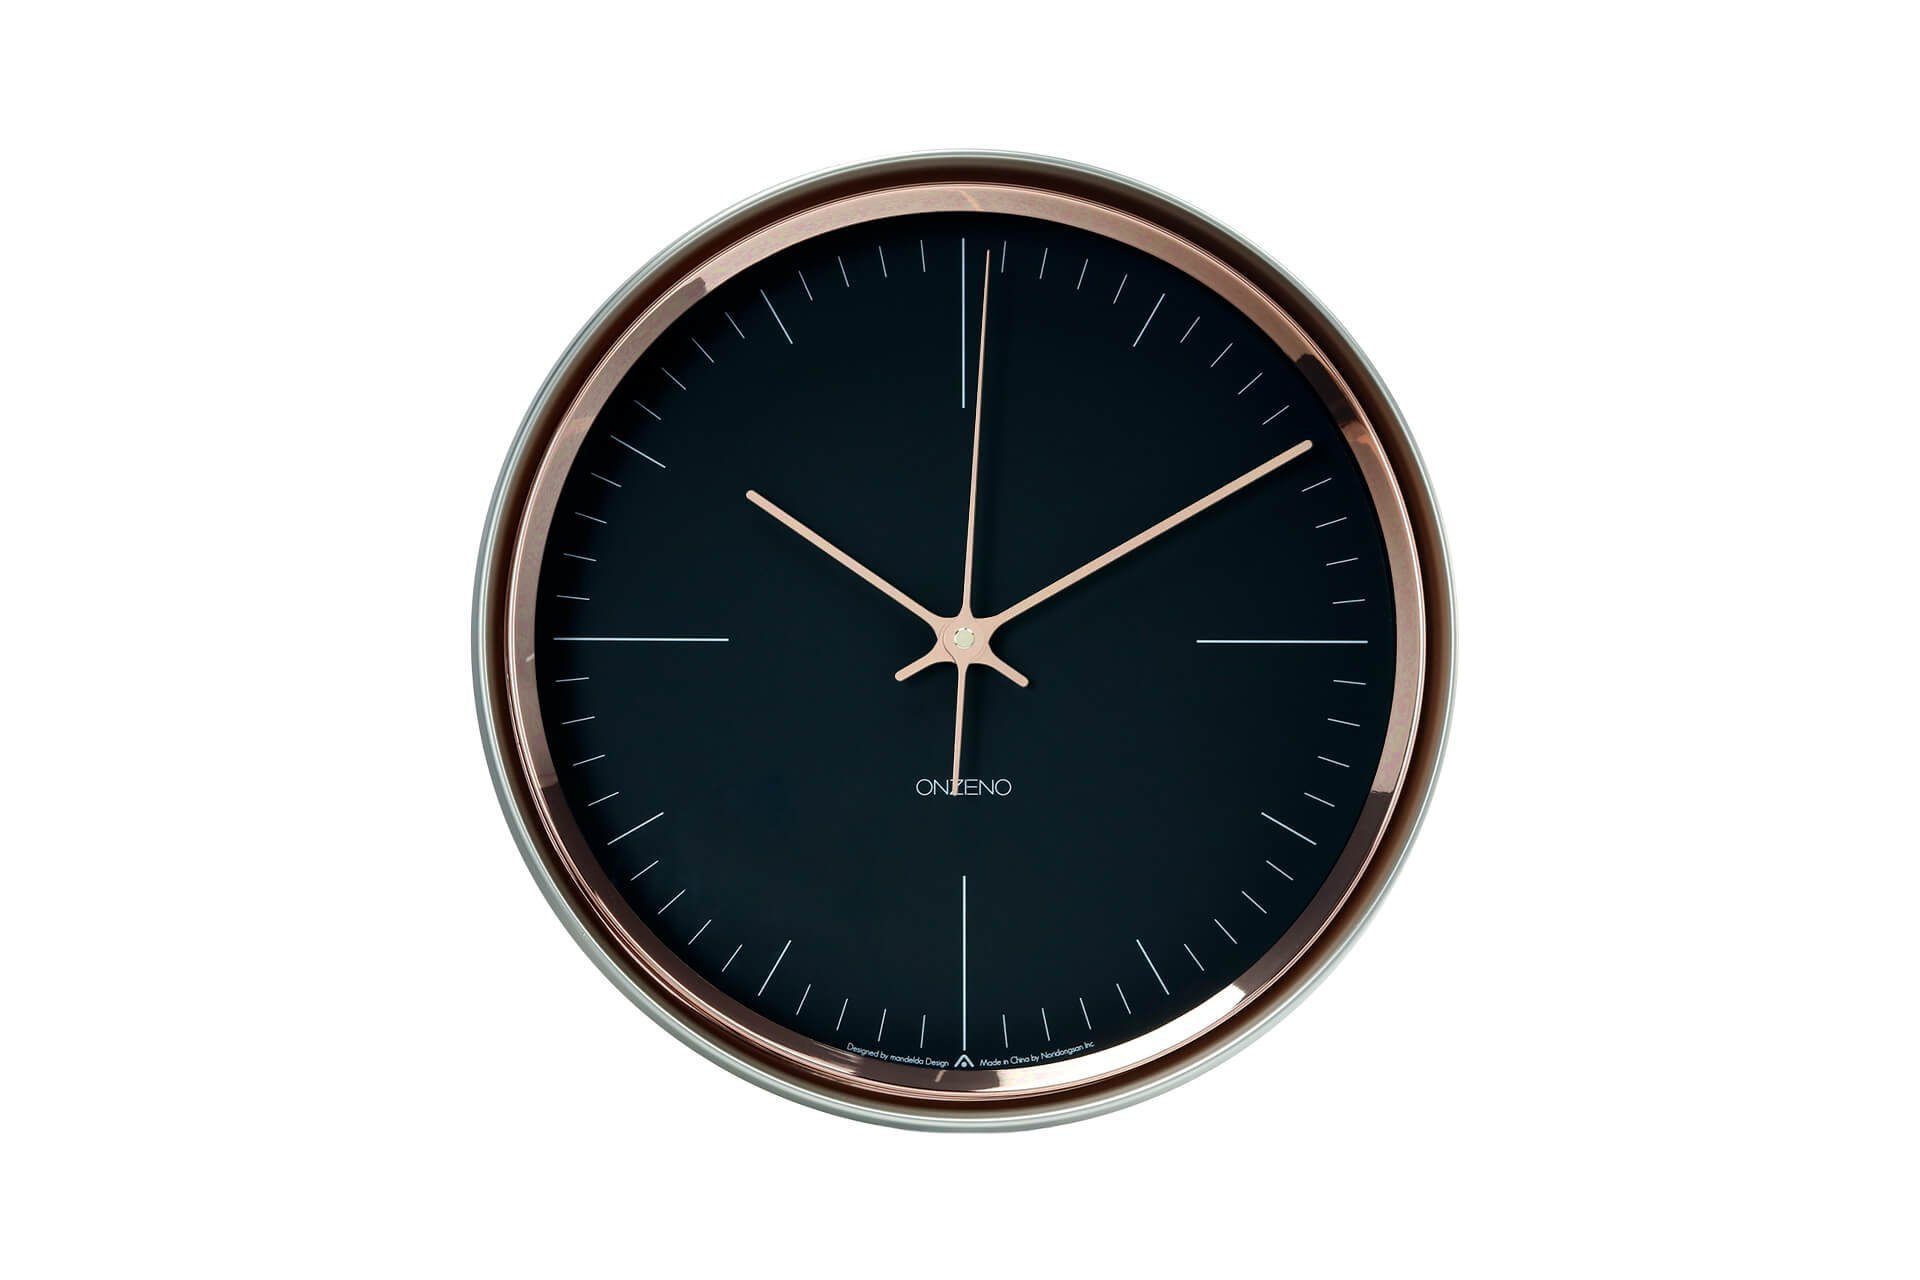 ONZENO Wanduhr THE ENIGMATIC. 32.7x32.7x8.1 cm (handgefertigte Design-Uhr)